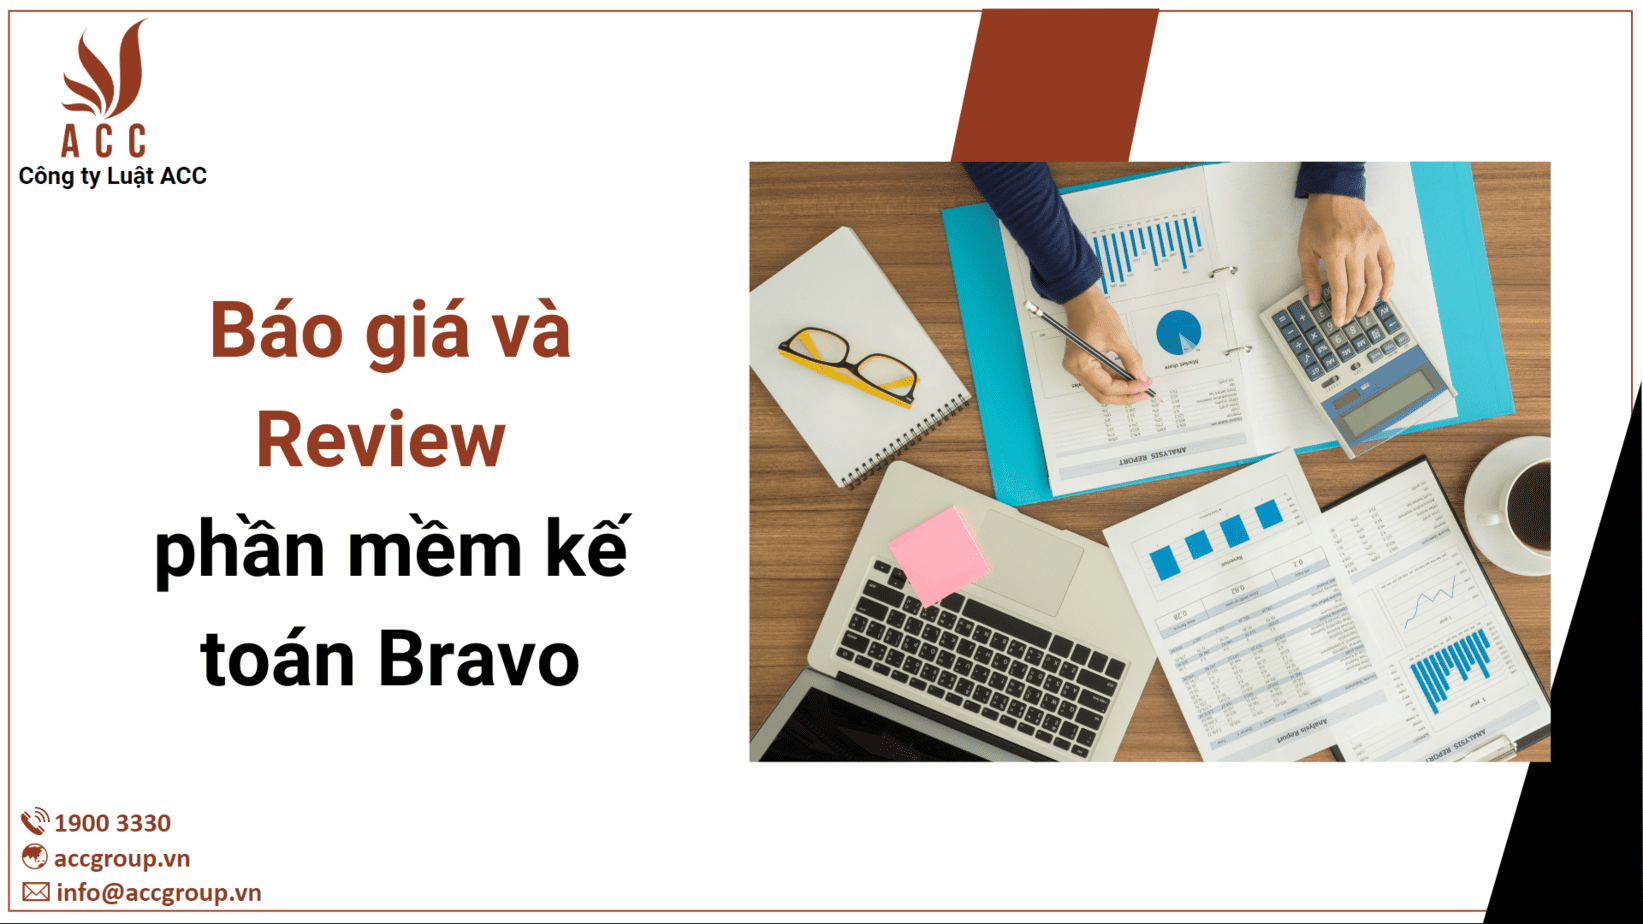 Với Bravo, việc quản lý tài chính của bạn sẽ trở nên dễ dàng hơn bao giờ hết. Nhanh chóng tải về và khám phá sự tiện dụng của phần mềm Bravo ngay hôm nay.